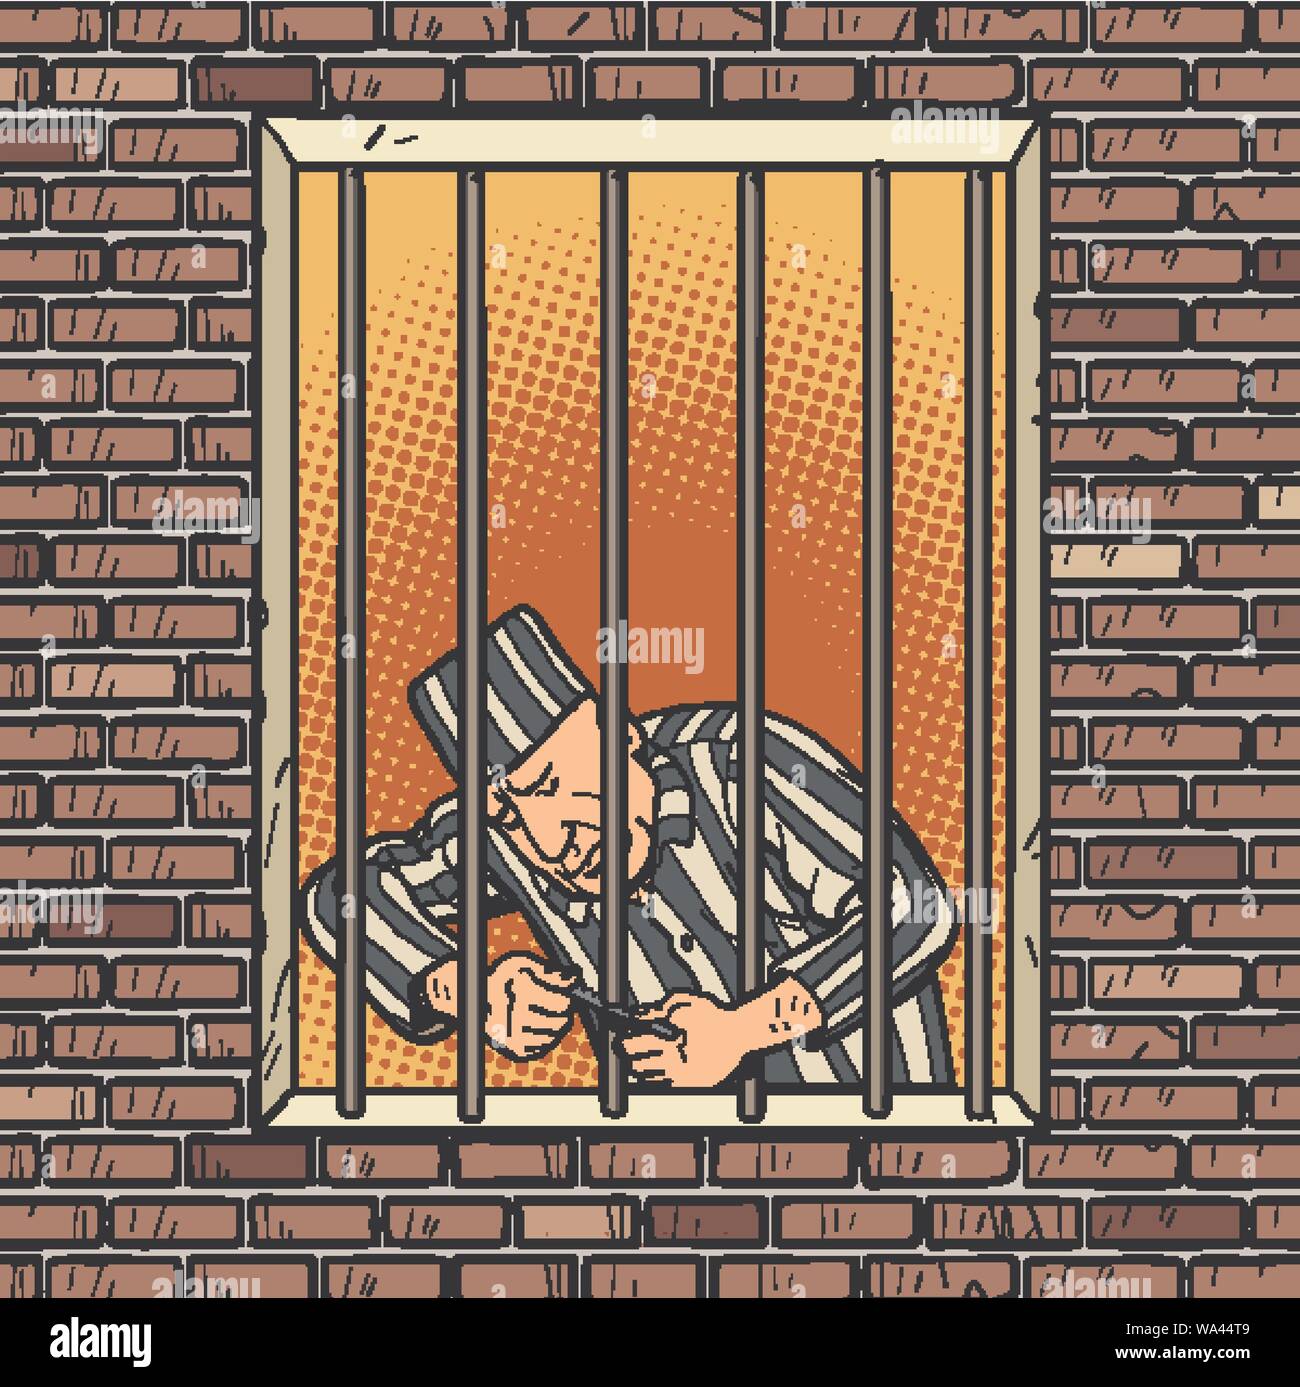 Ein gefangener entkommt aus dem Gefängnis. Jailbreak Stock Vektor